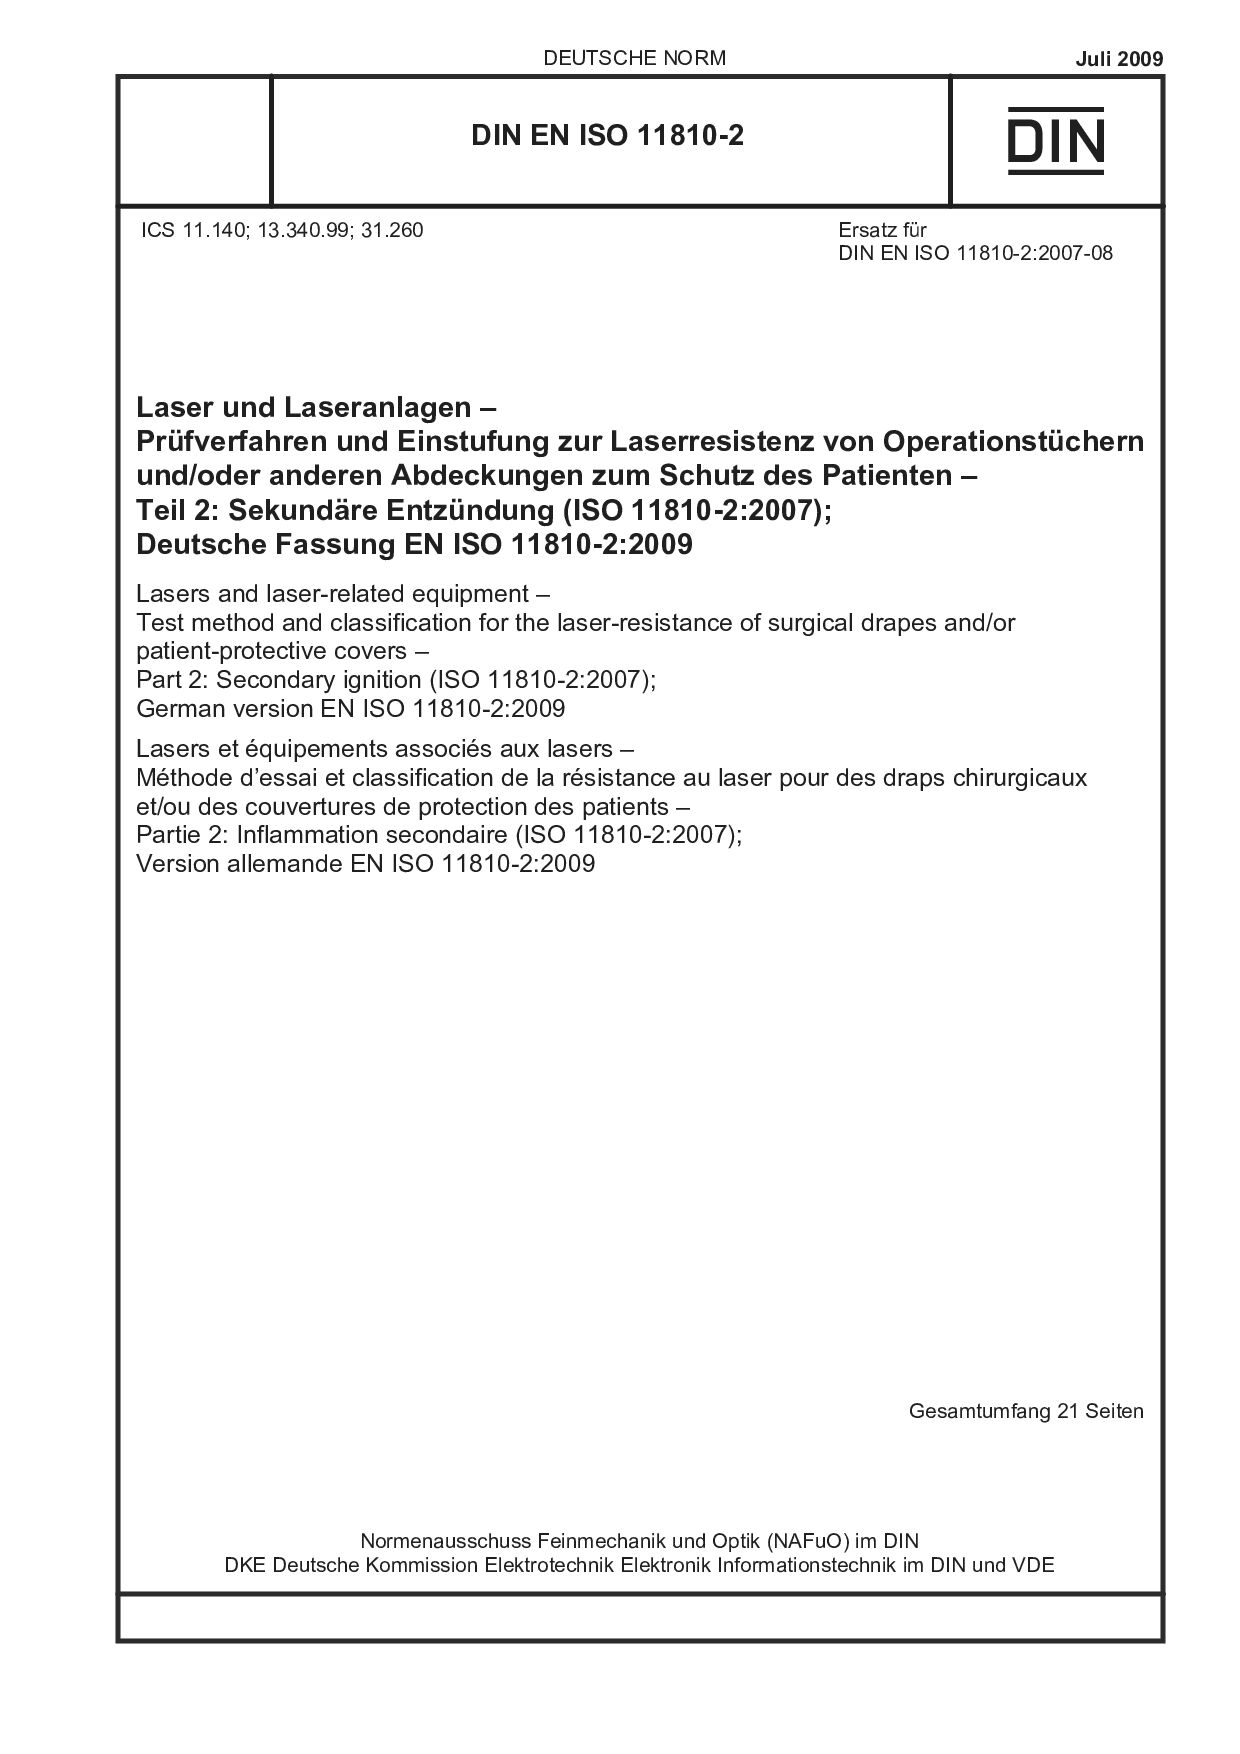 DIN EN ISO 11810-2:2009封面图